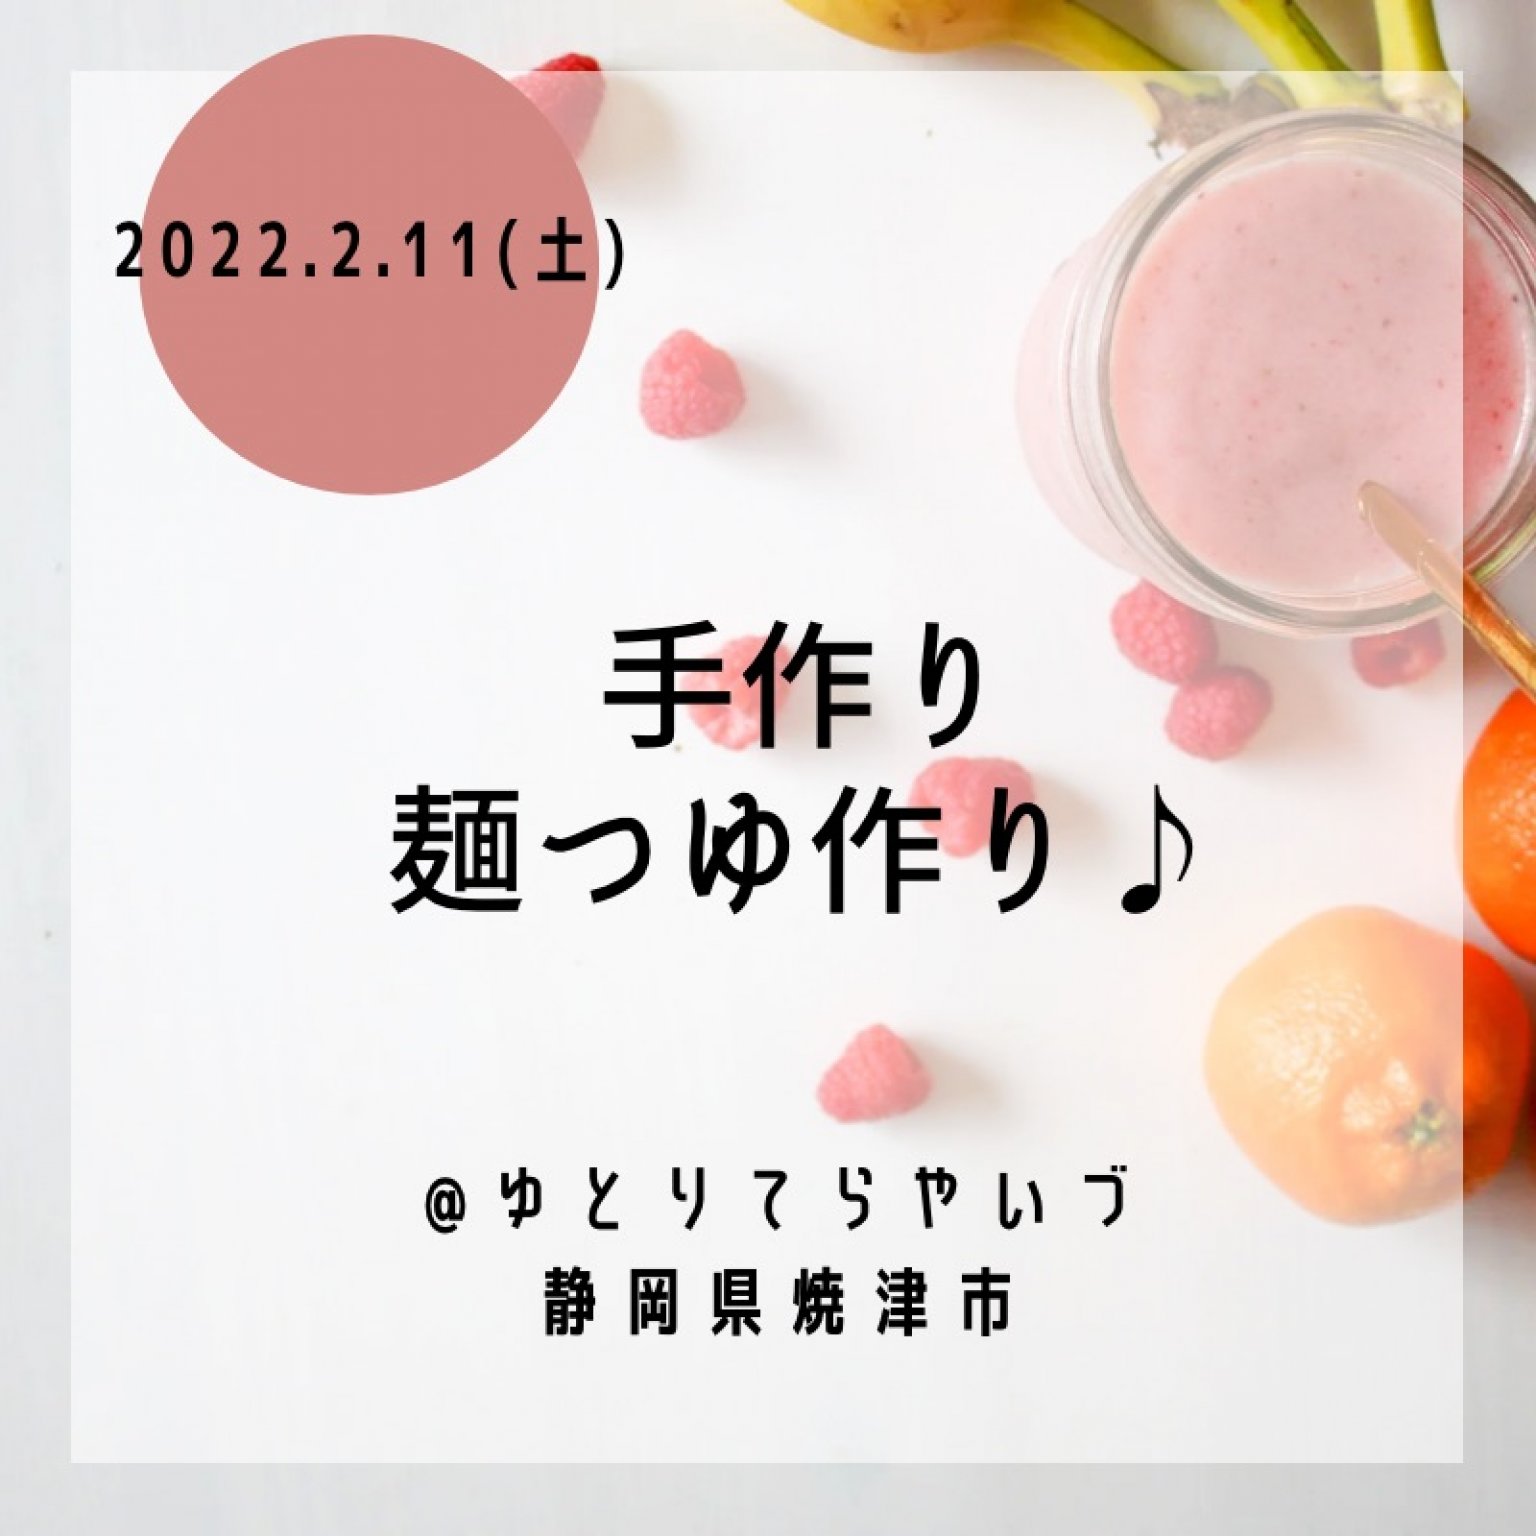 2023/2/11(土)開催|手作り♪ouchi(お家)麺つゆと自分好みのソルトを作ってみよう。